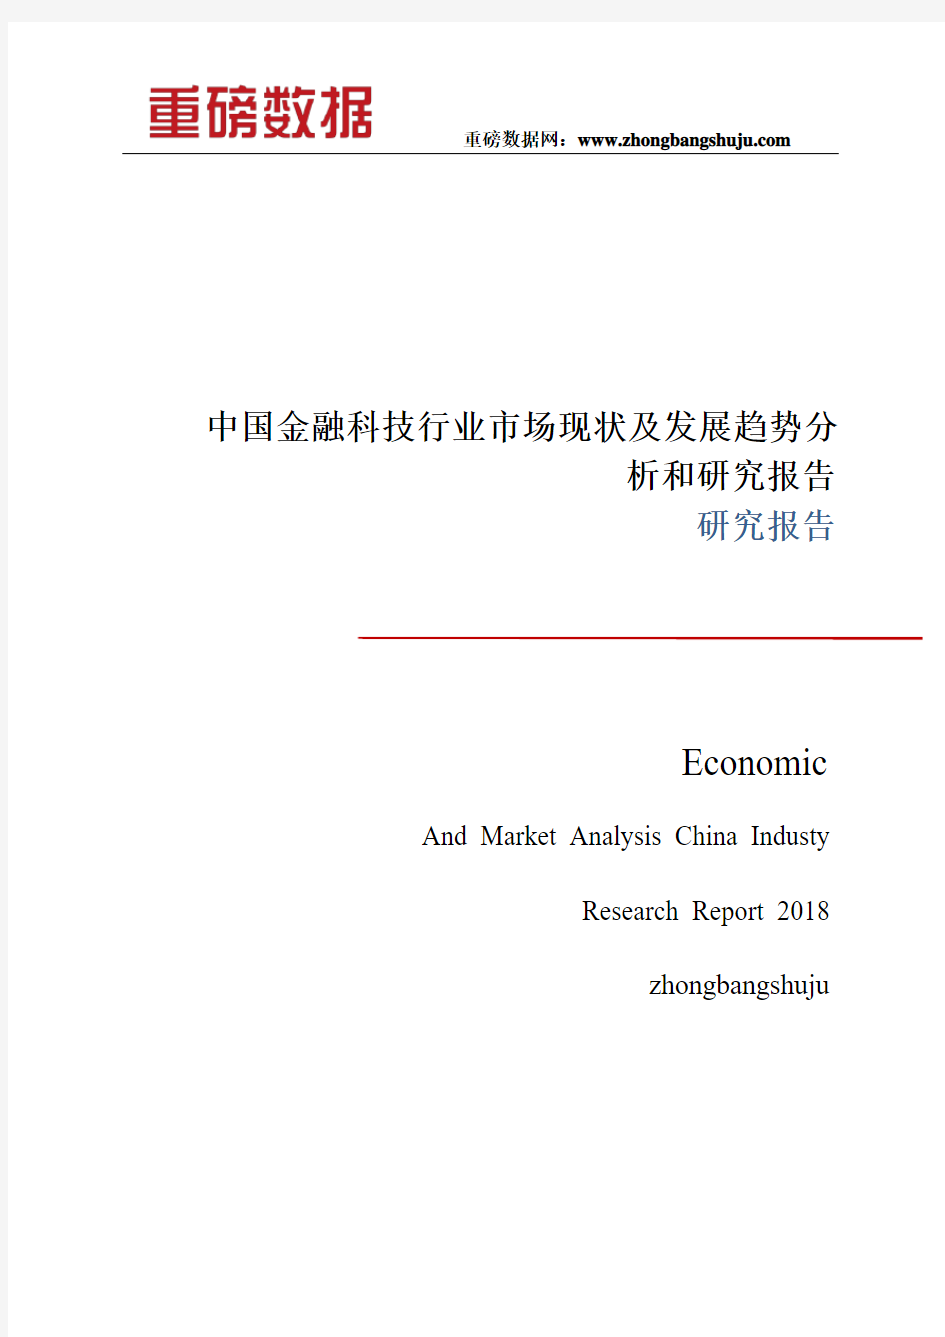 中国金融科技行业市场现状及发展趋势分析和研究报告2017-2018